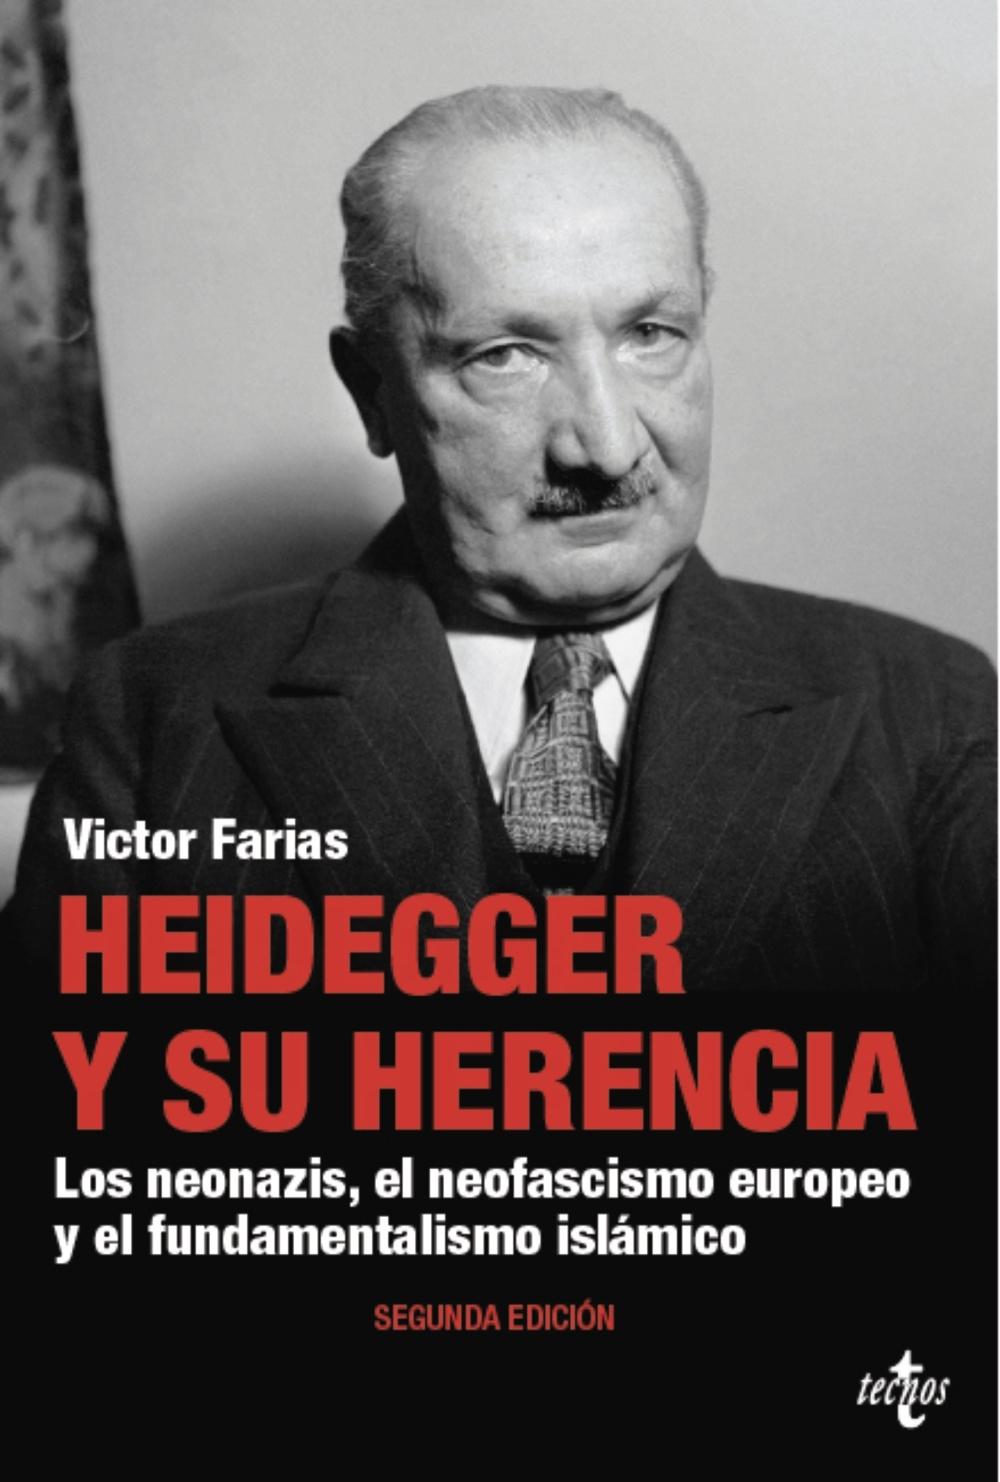 HEIDEGGER Y SU HERENCIA "LOS NEONAZIS, LOS FASCISTAS EUROPEOS, LOS FUNDAMENTALISTAS  ISLÁMICOS, LOS NEOIMPERIALISTAS RUSOS ....". 